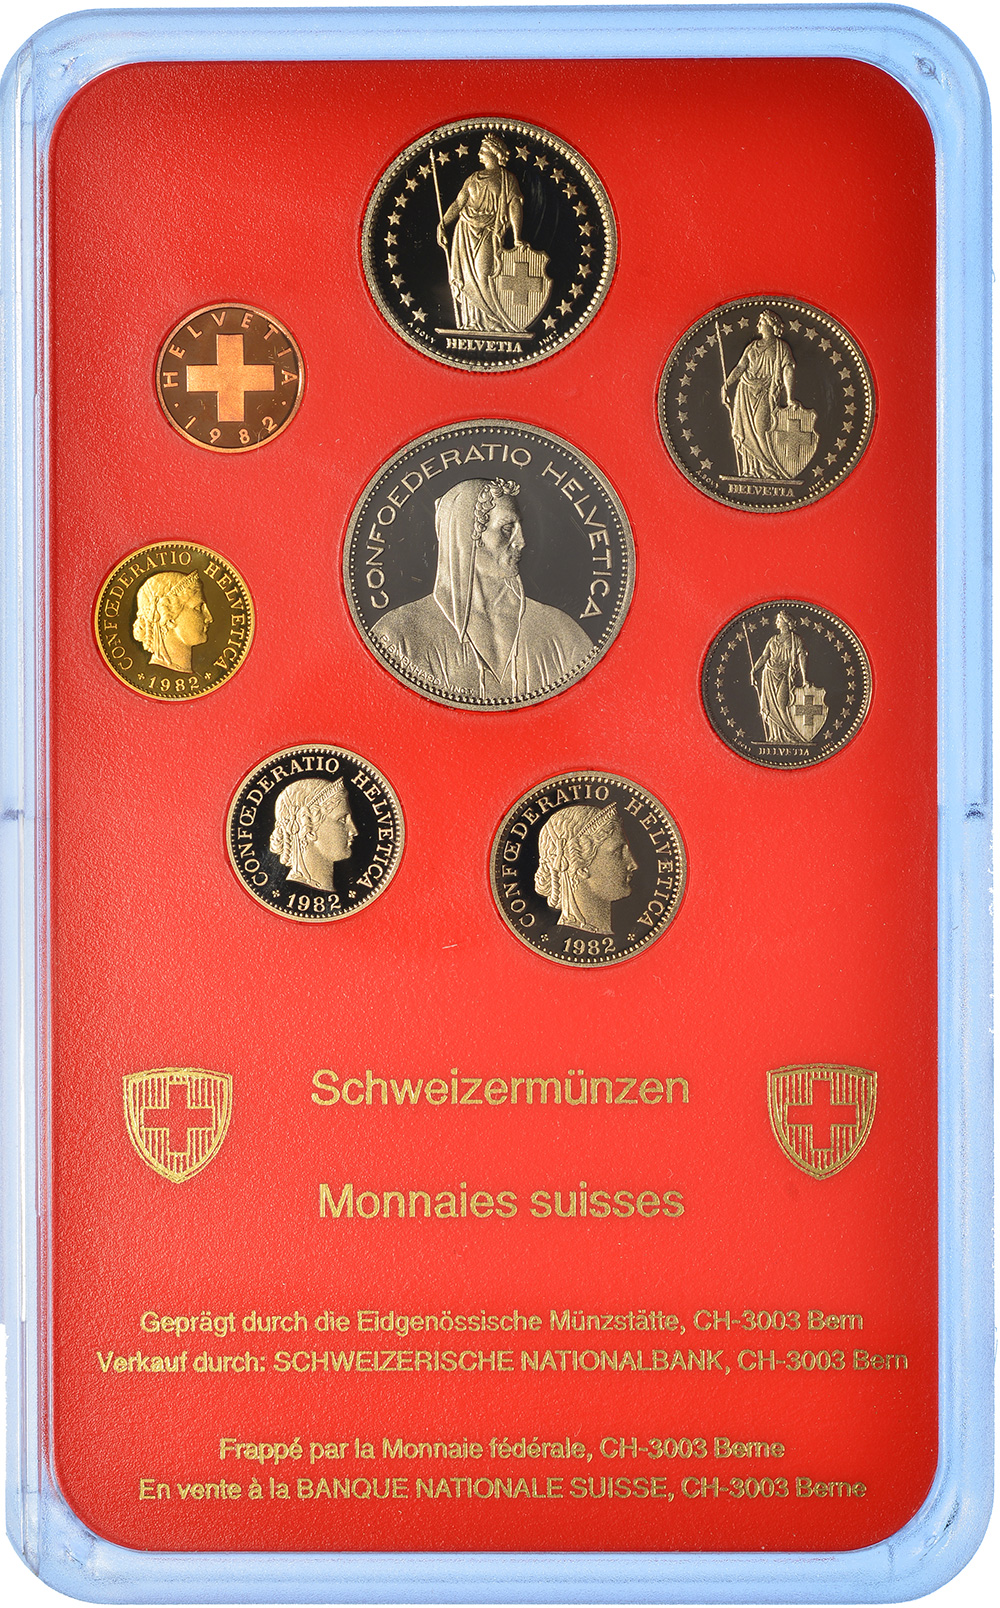 Münzensatz, 1982, Polierte Platte, Kupfer/Nickel